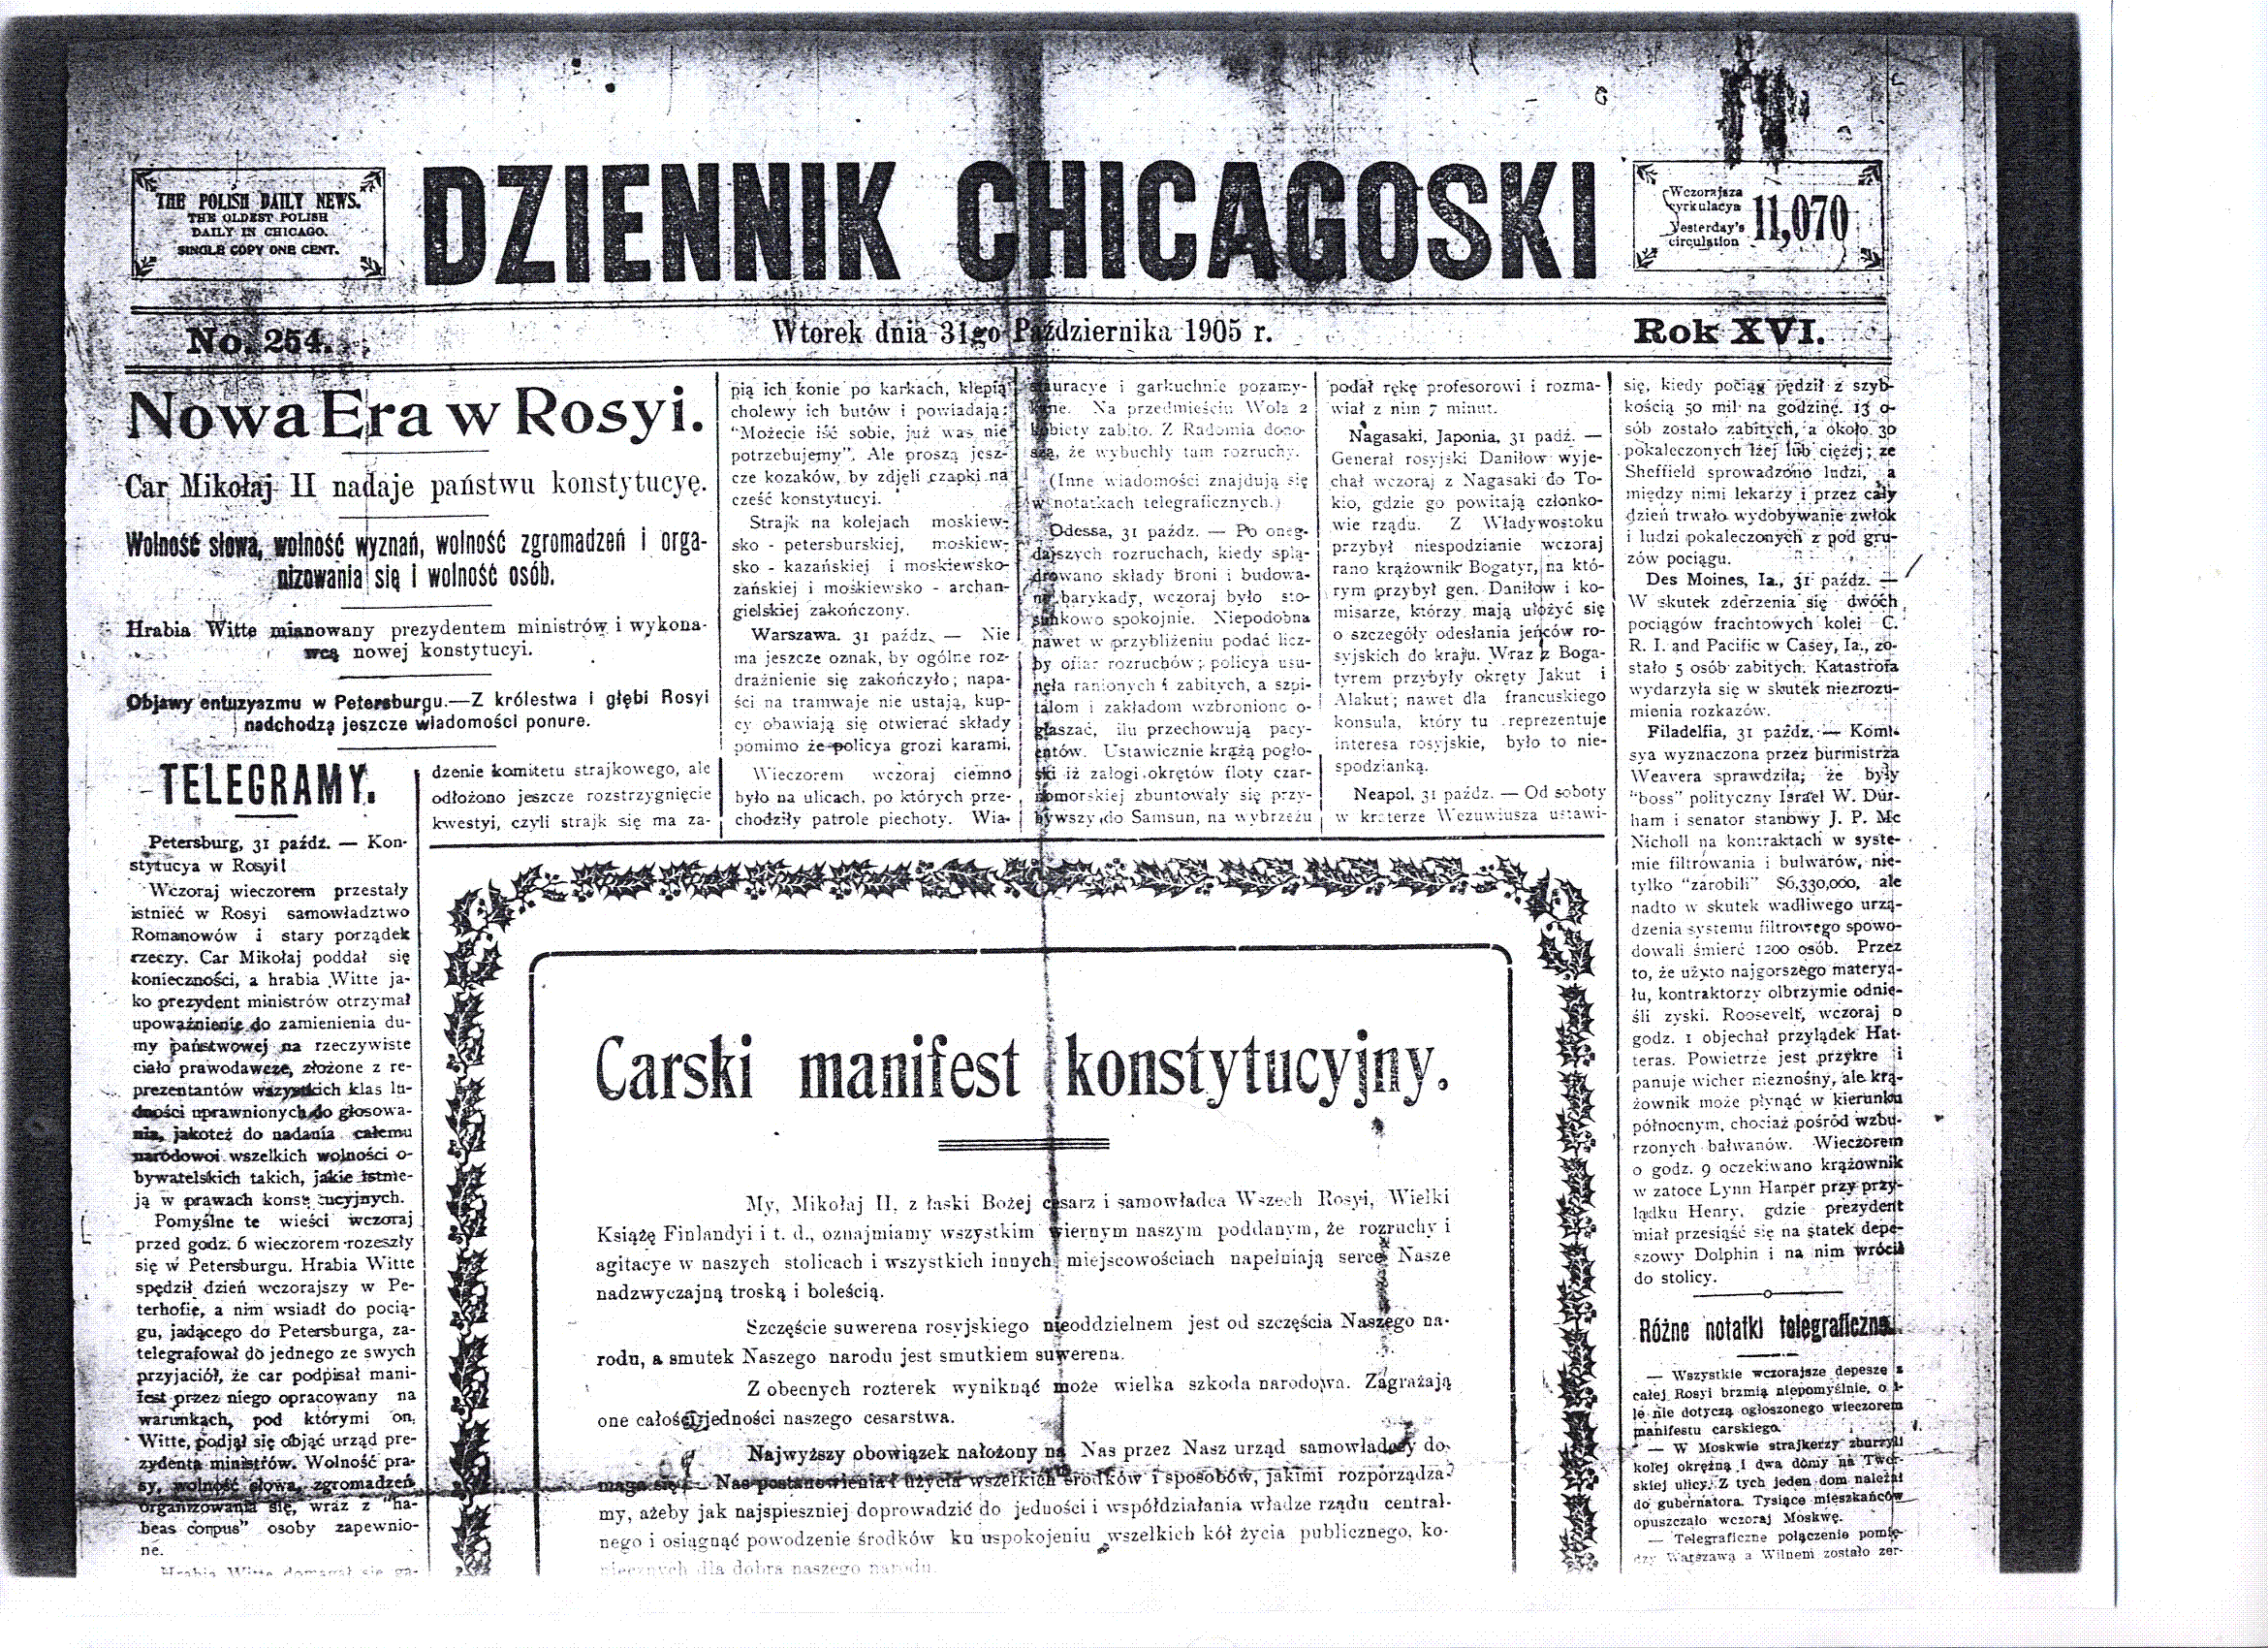 31 October 1905